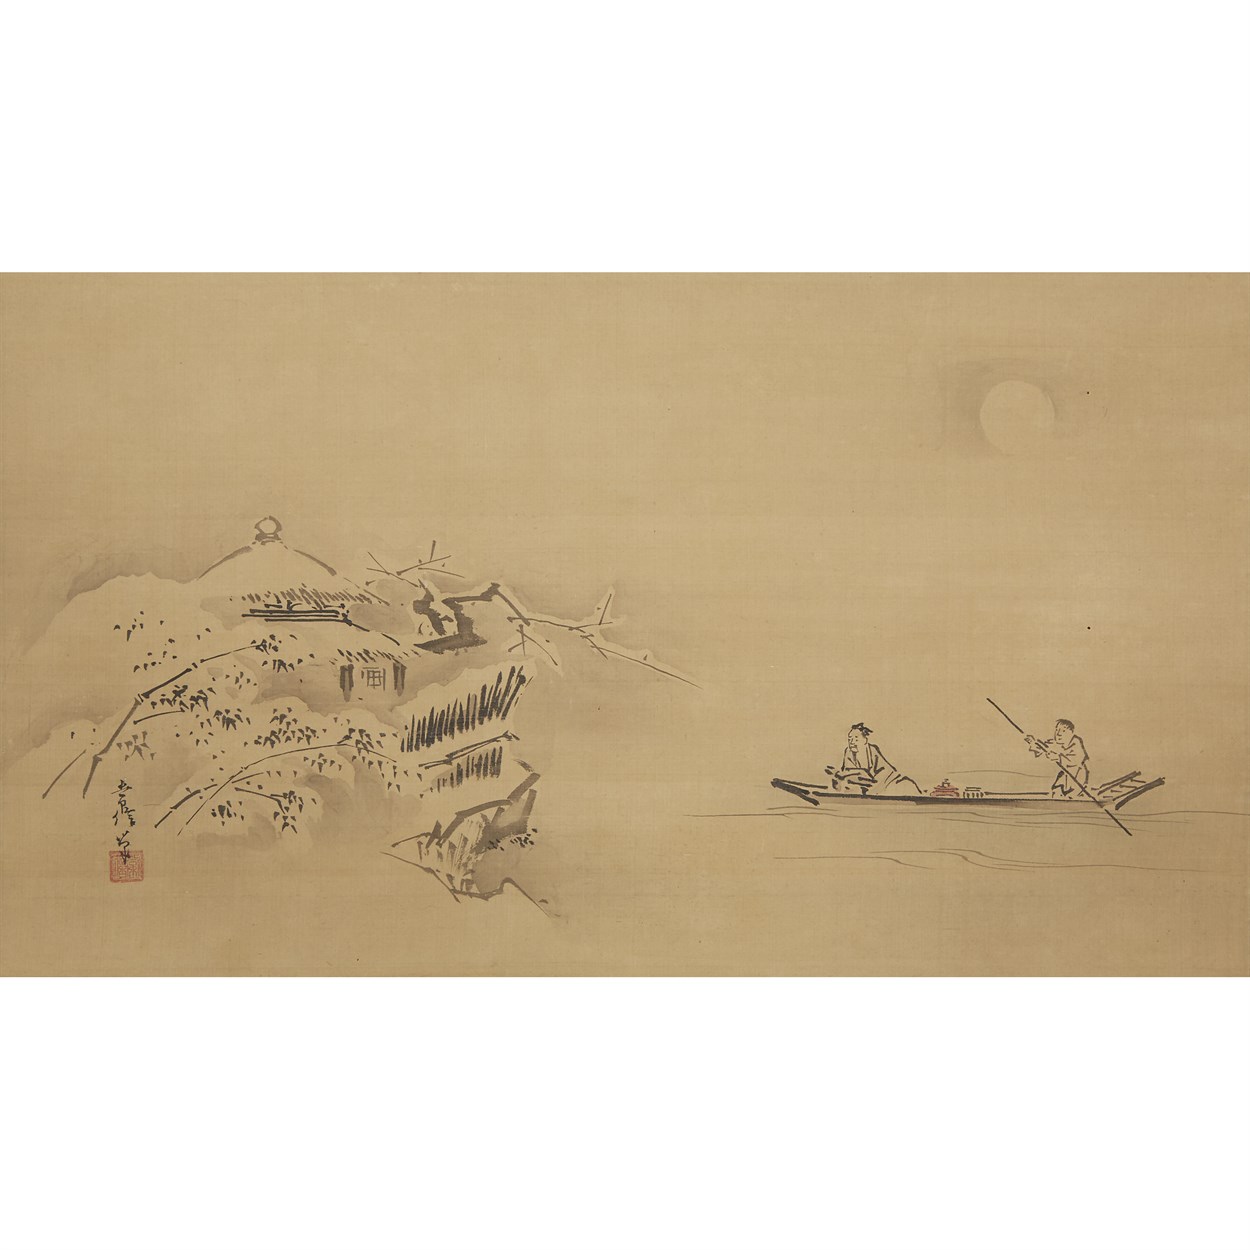 Lot 4 - AFTER KANO TSUNENOBU (1636-1713)  19TH CENTURY